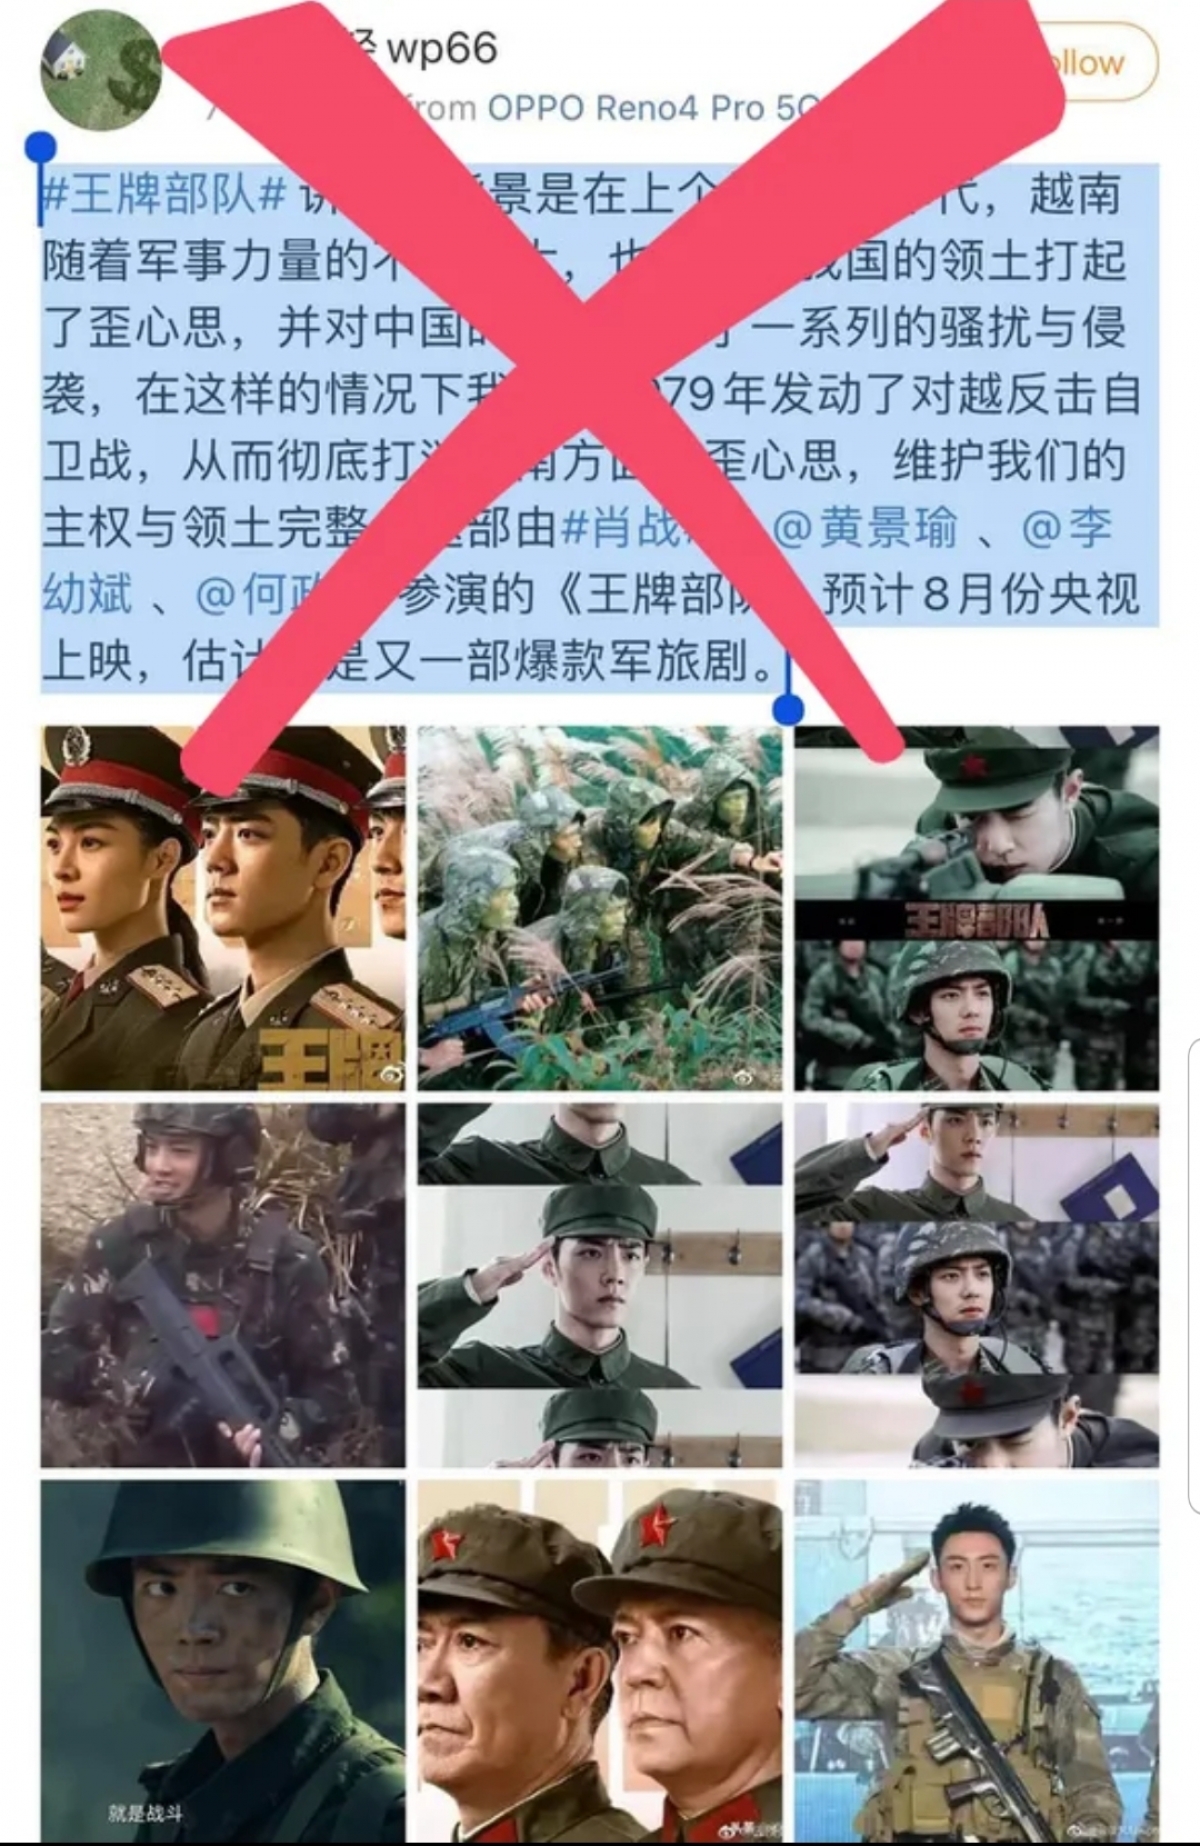 Những hình ảnh và quảng cáo phim "Quân đội Vương Bài" mang tính xuyên tạc lịch sử trên mạng xã hội Weibo